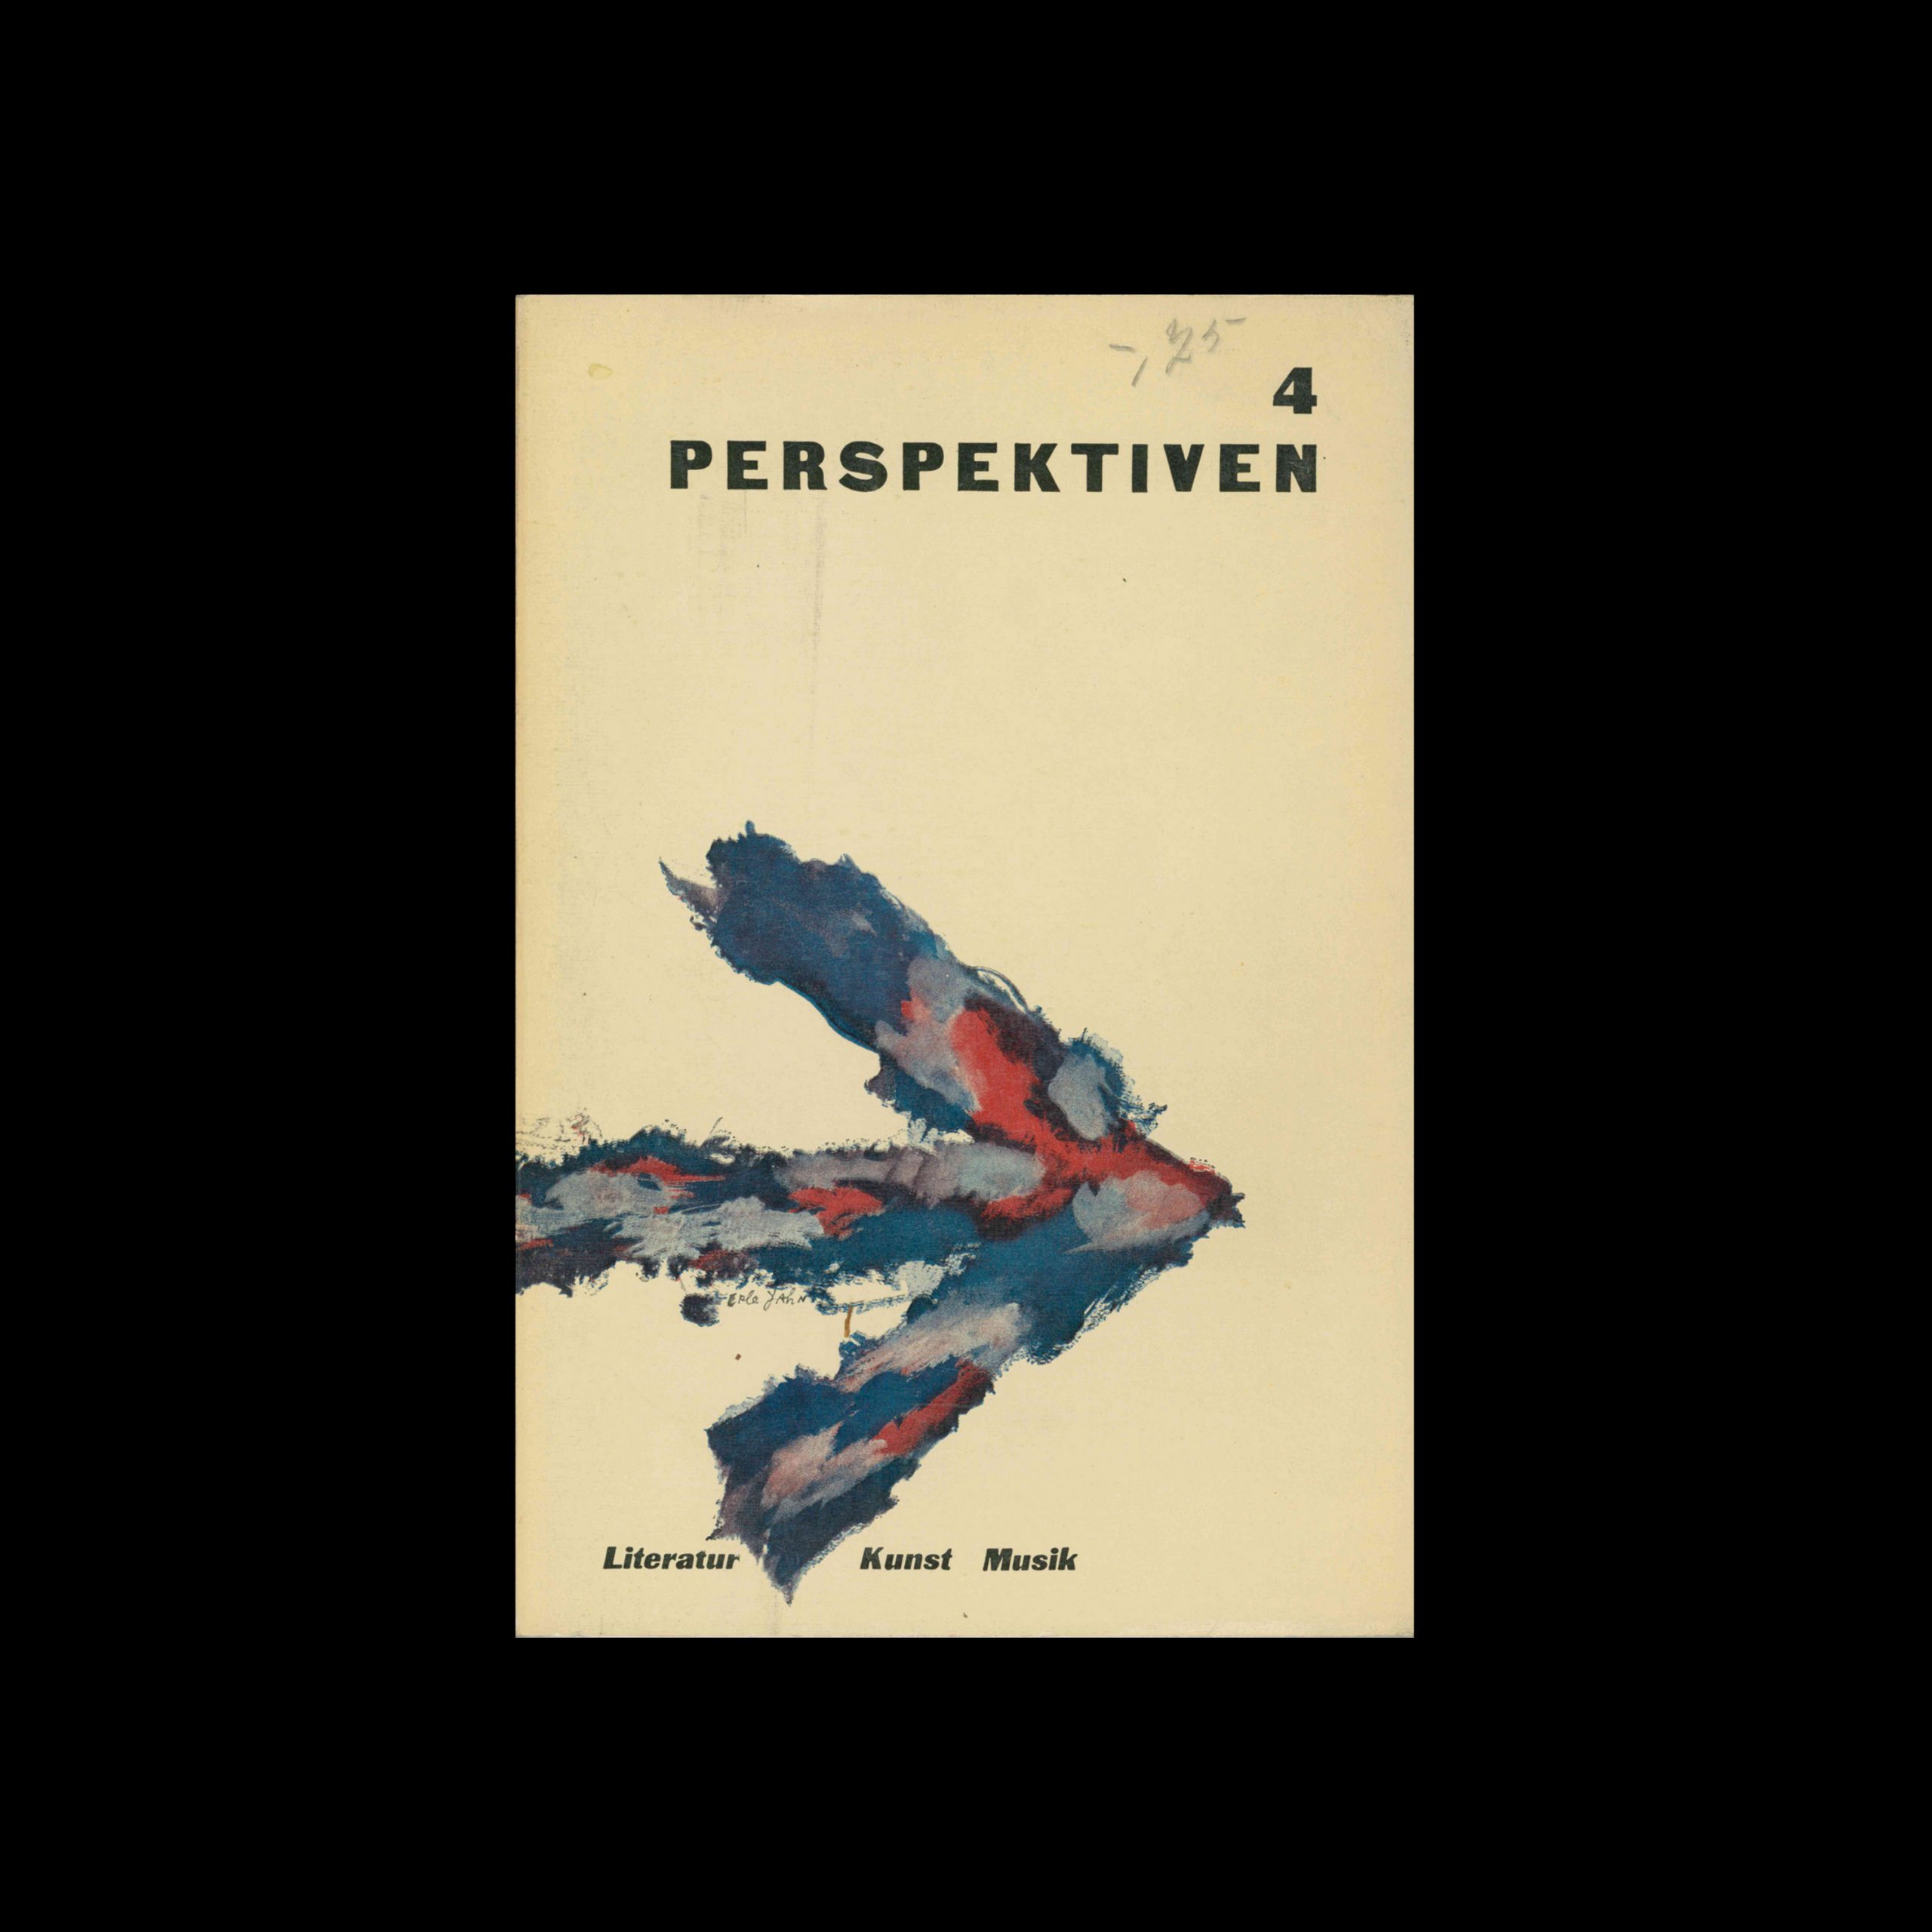 Perspektiven, Literatur, Kunst, Musik, 4, 1953. Cover design by Erle Yahn